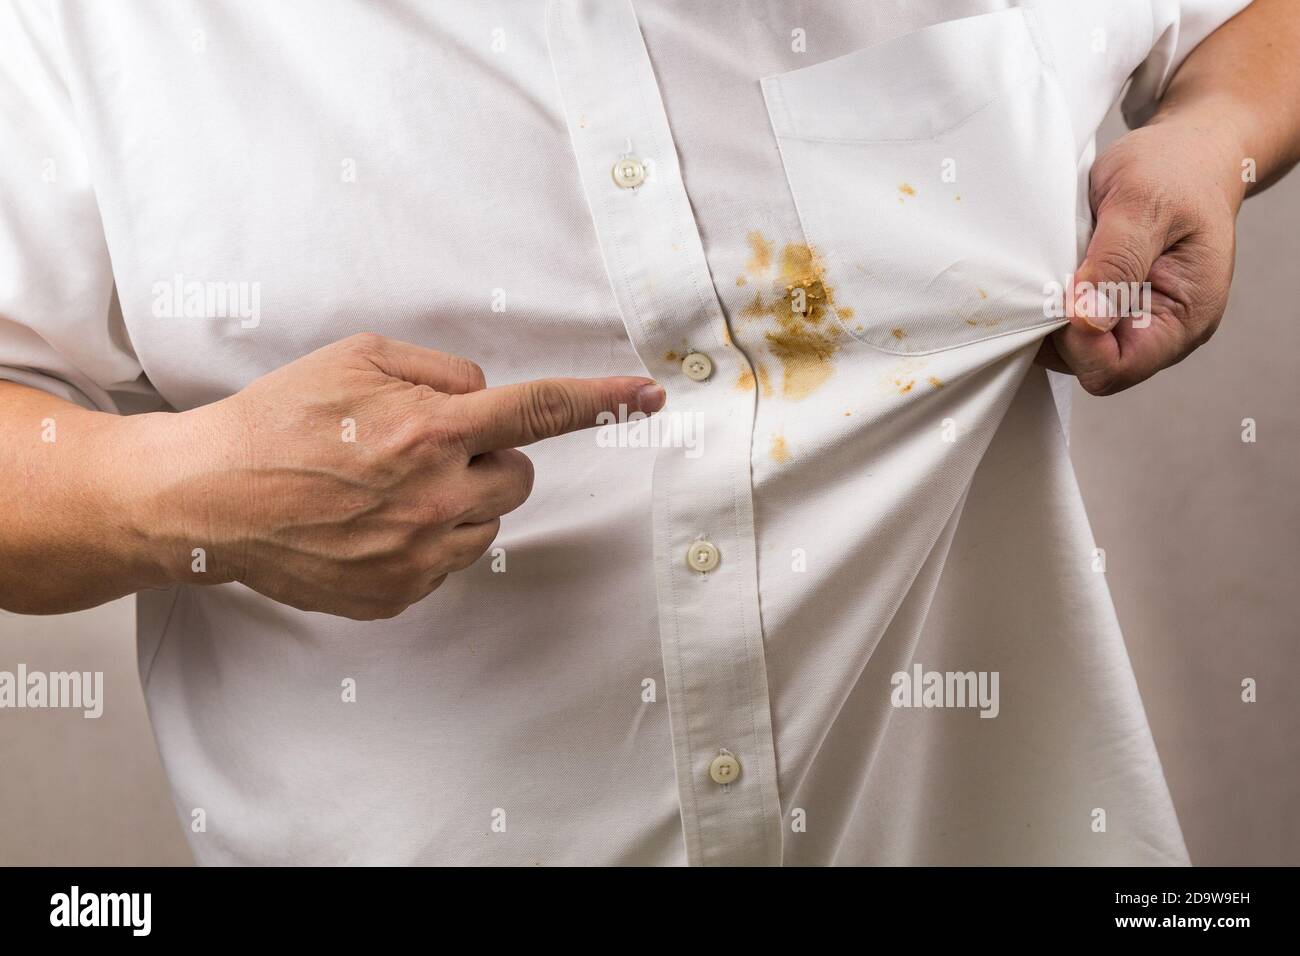 Personne pointant vers une tache de curry renversée sur une chemise blanche  Photo Stock - Alamy